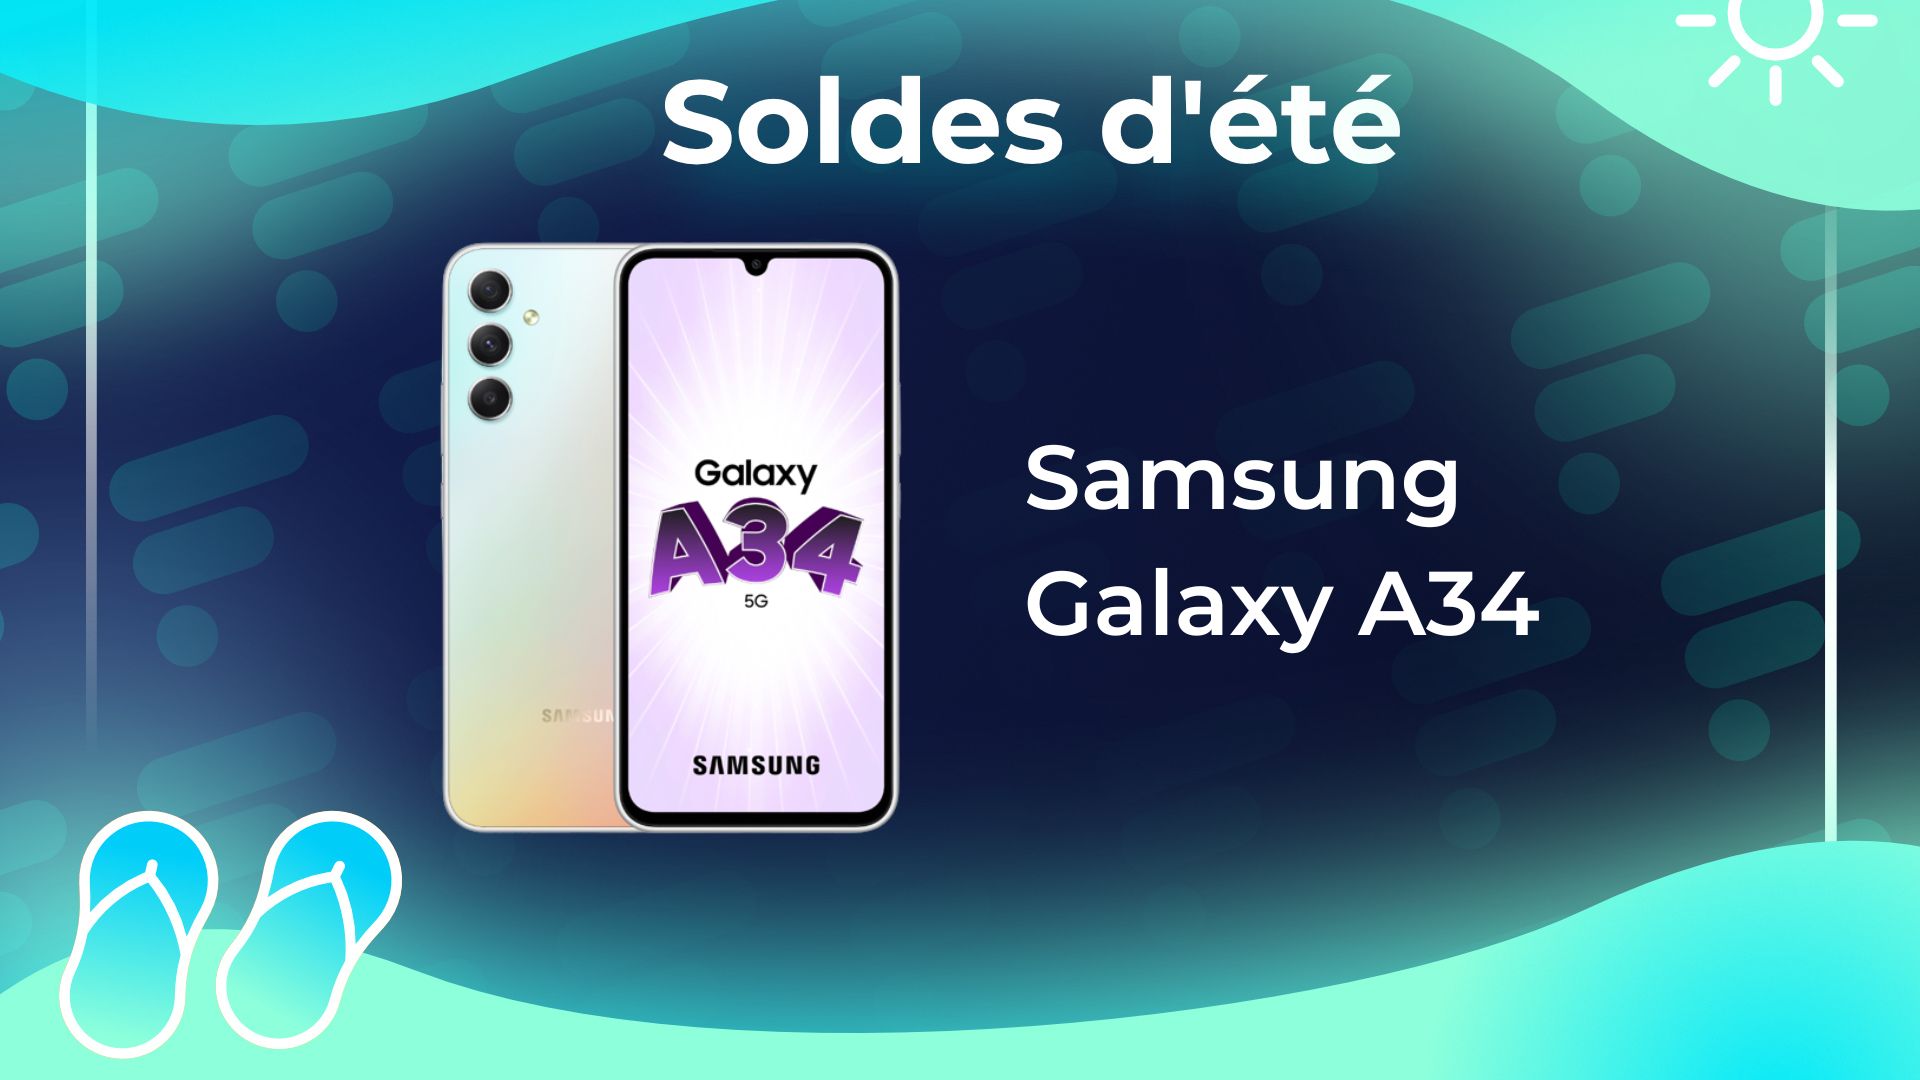 Soldes Samsung 870 QVO 2024 au meilleur prix sur